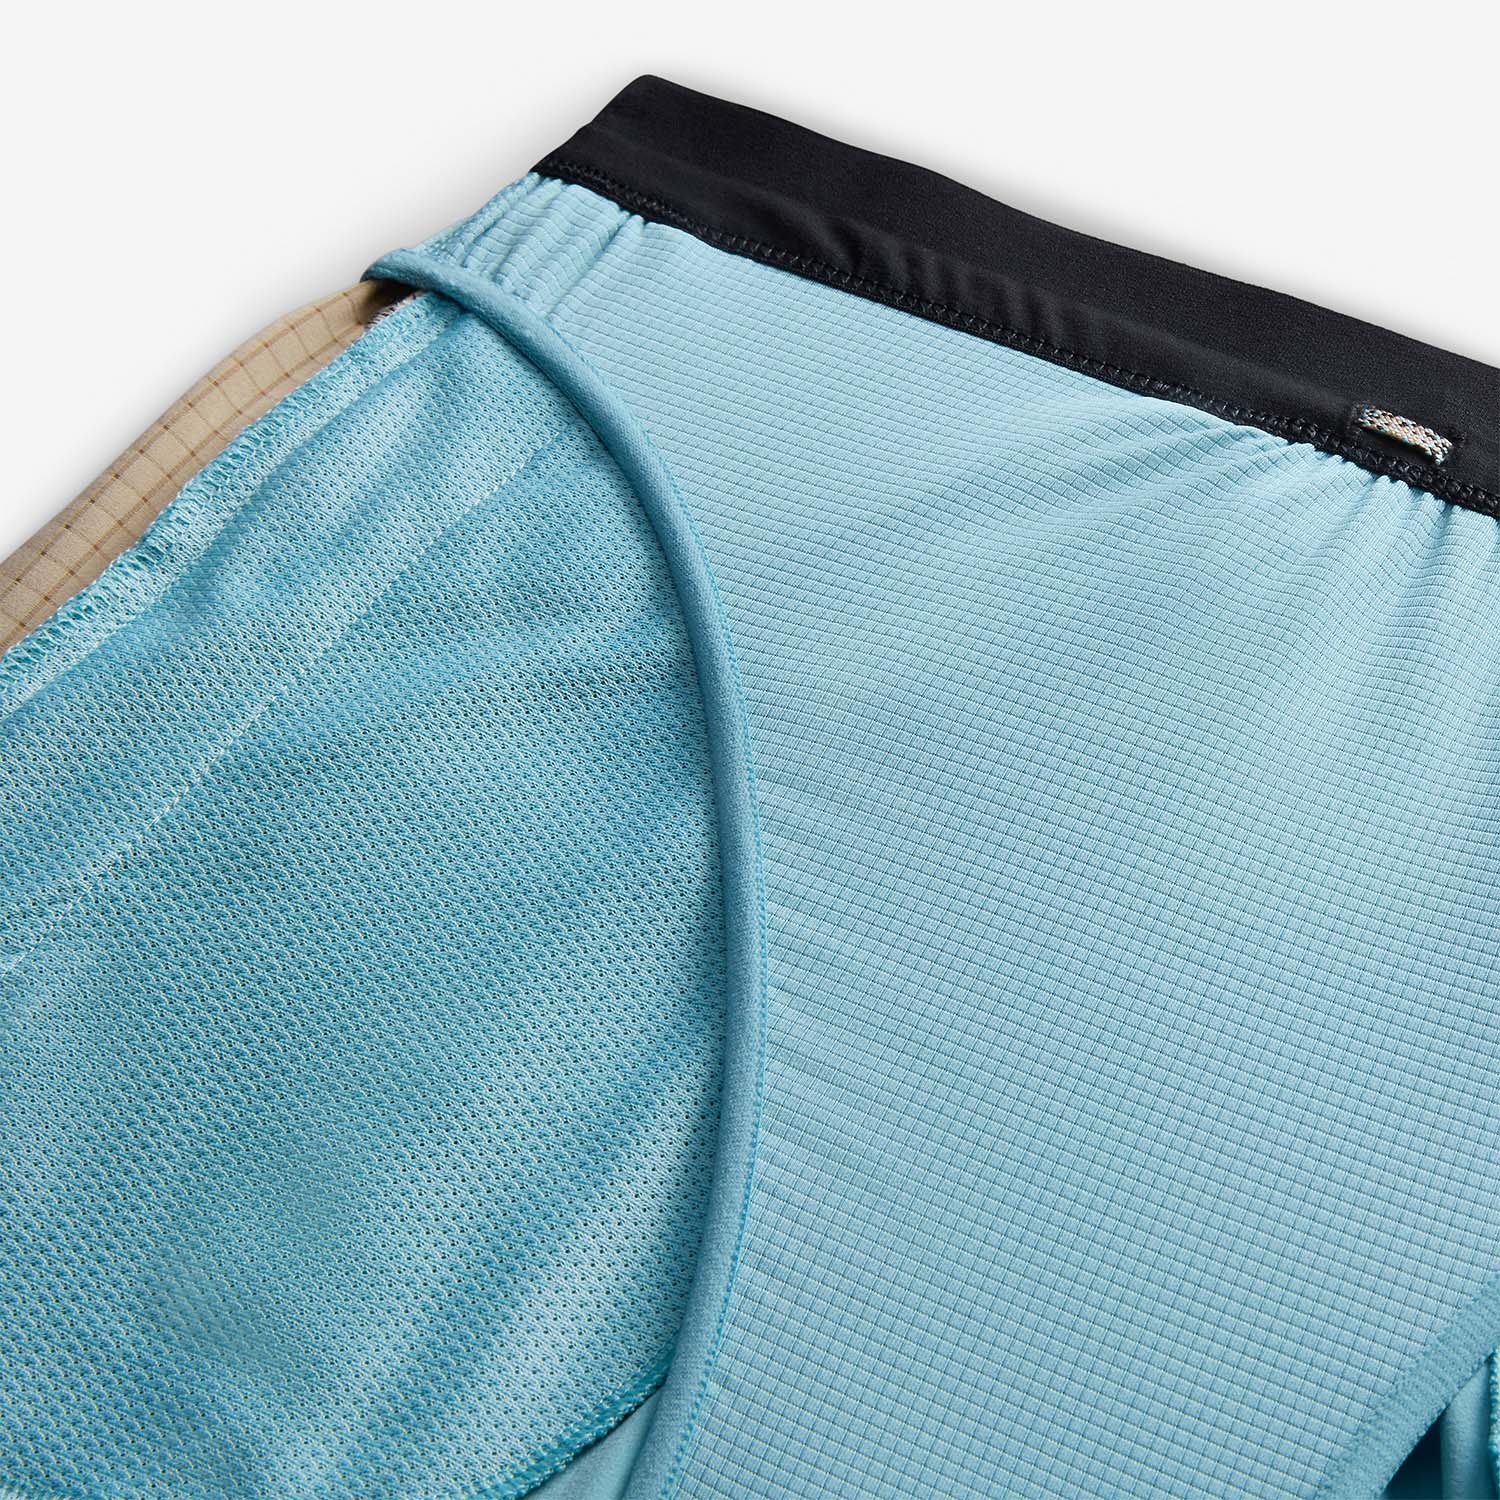 Nike Dri-FIT Second Sunrise 7in Shorts - Denim Turquoise/Khaki/Black